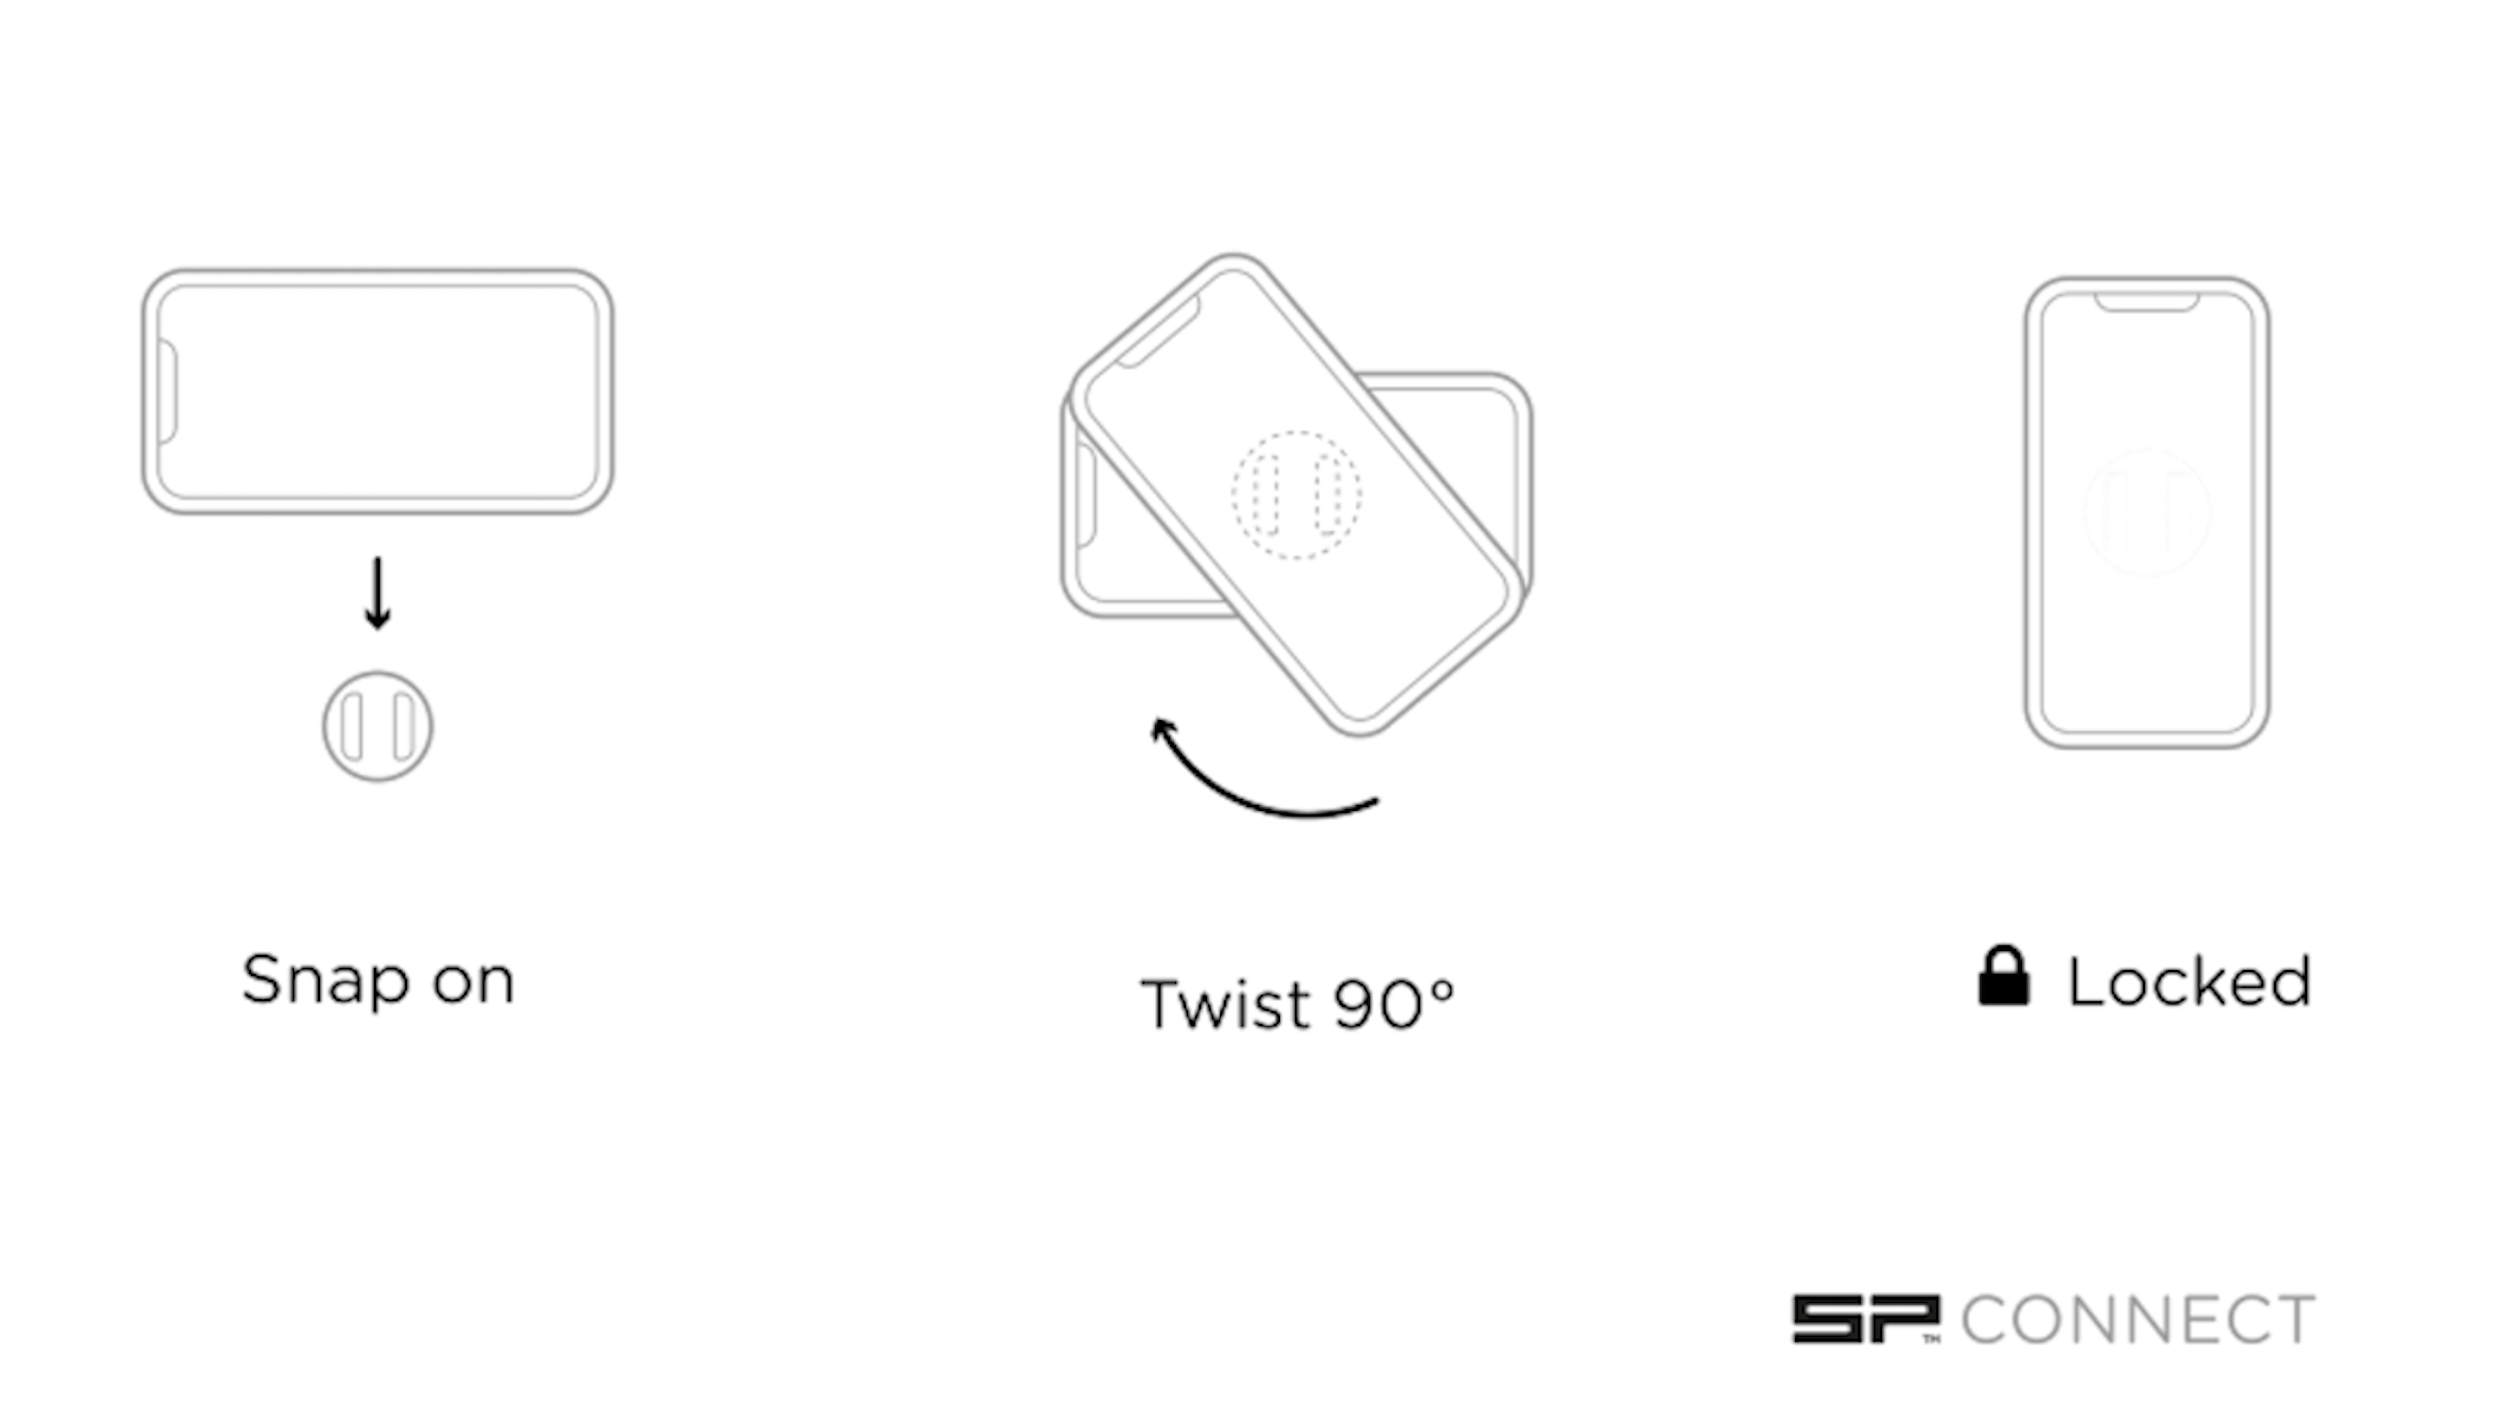 EGRET X+ (SP cm lang, Phone Pro, und X (120 Mount Connect) für Schwarz) Egret